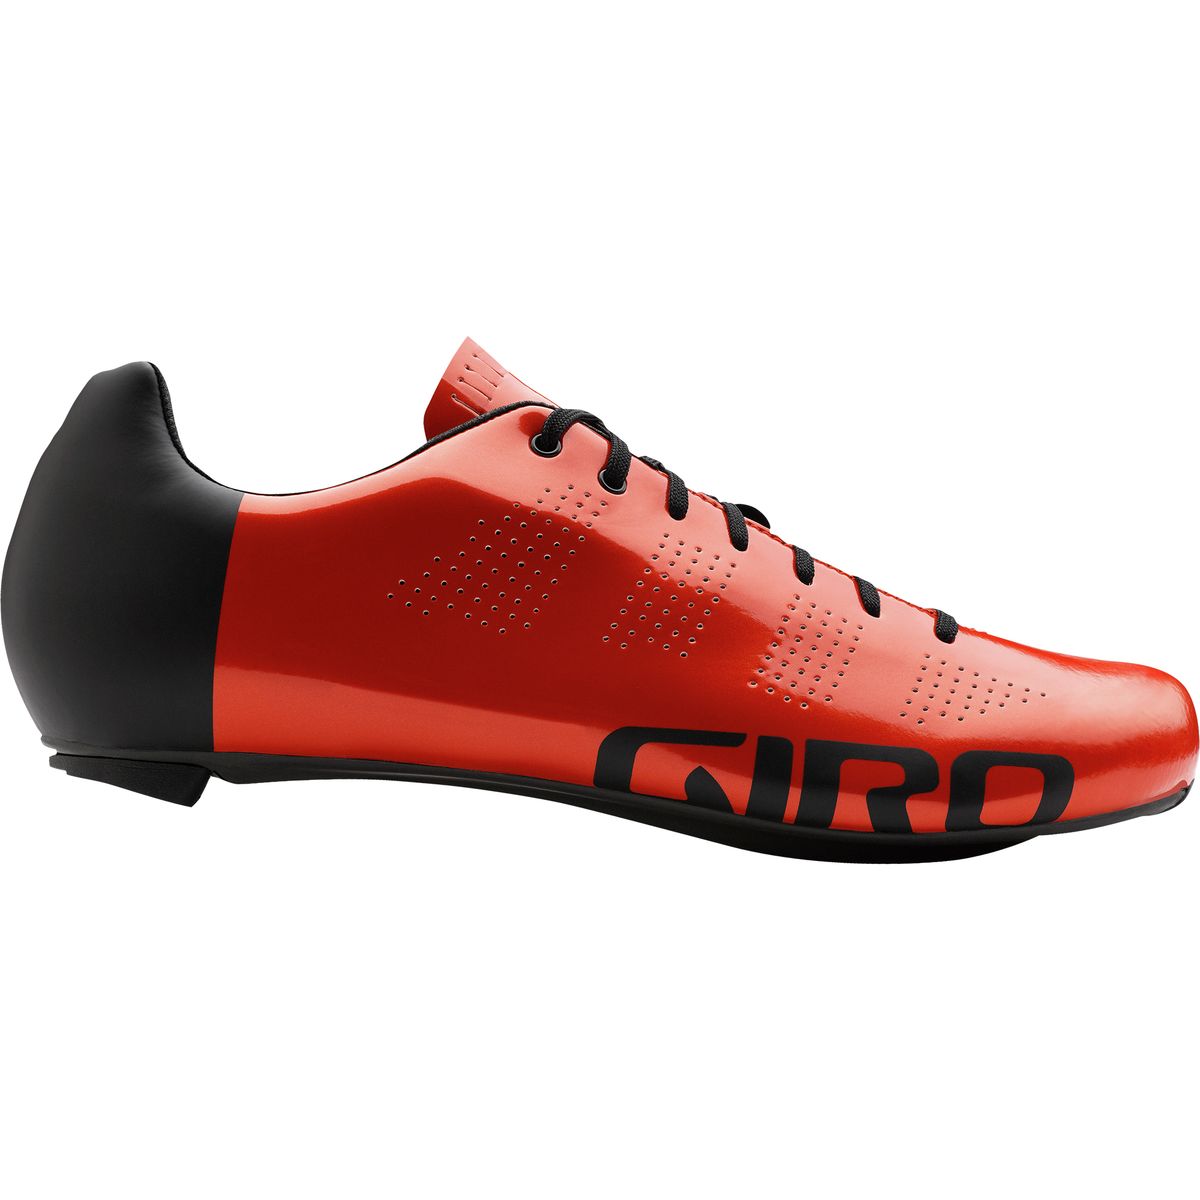 Giro Empire Acc Shoe Gir003e GIR003E 